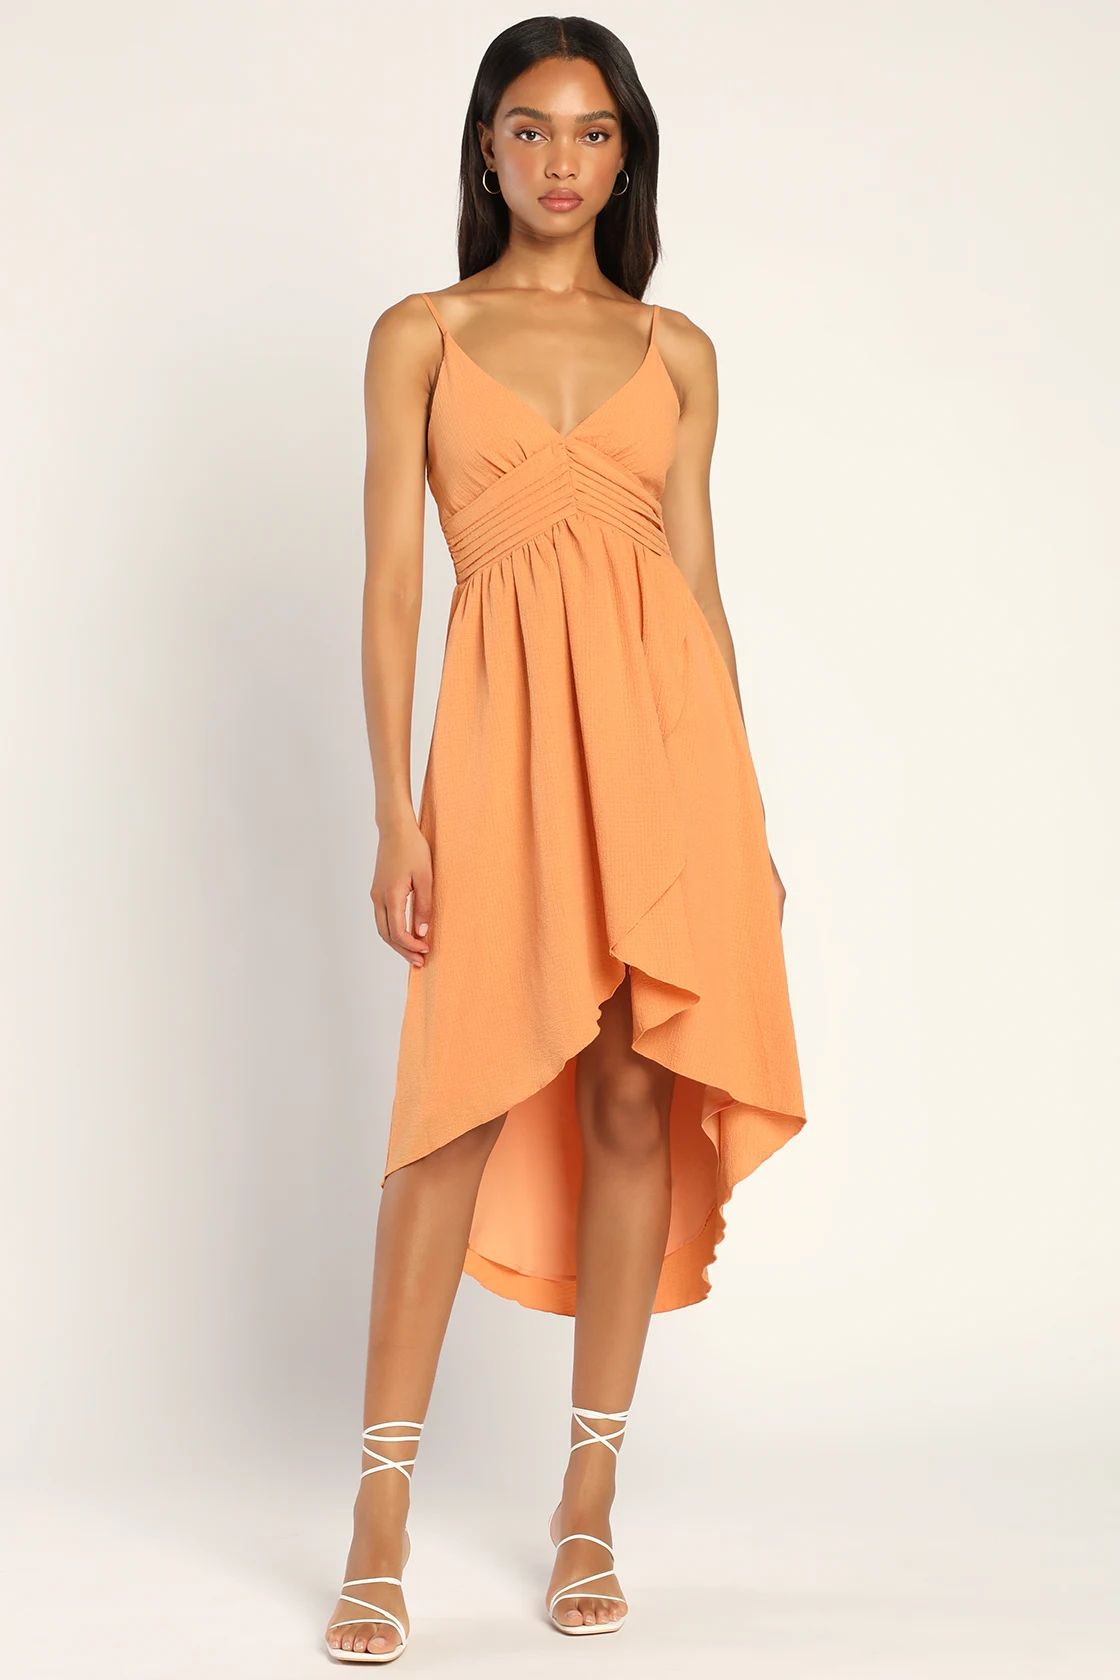 Spellbound Summer Orange Pleated Sleeveless High-Low Dress | Lulus (US)